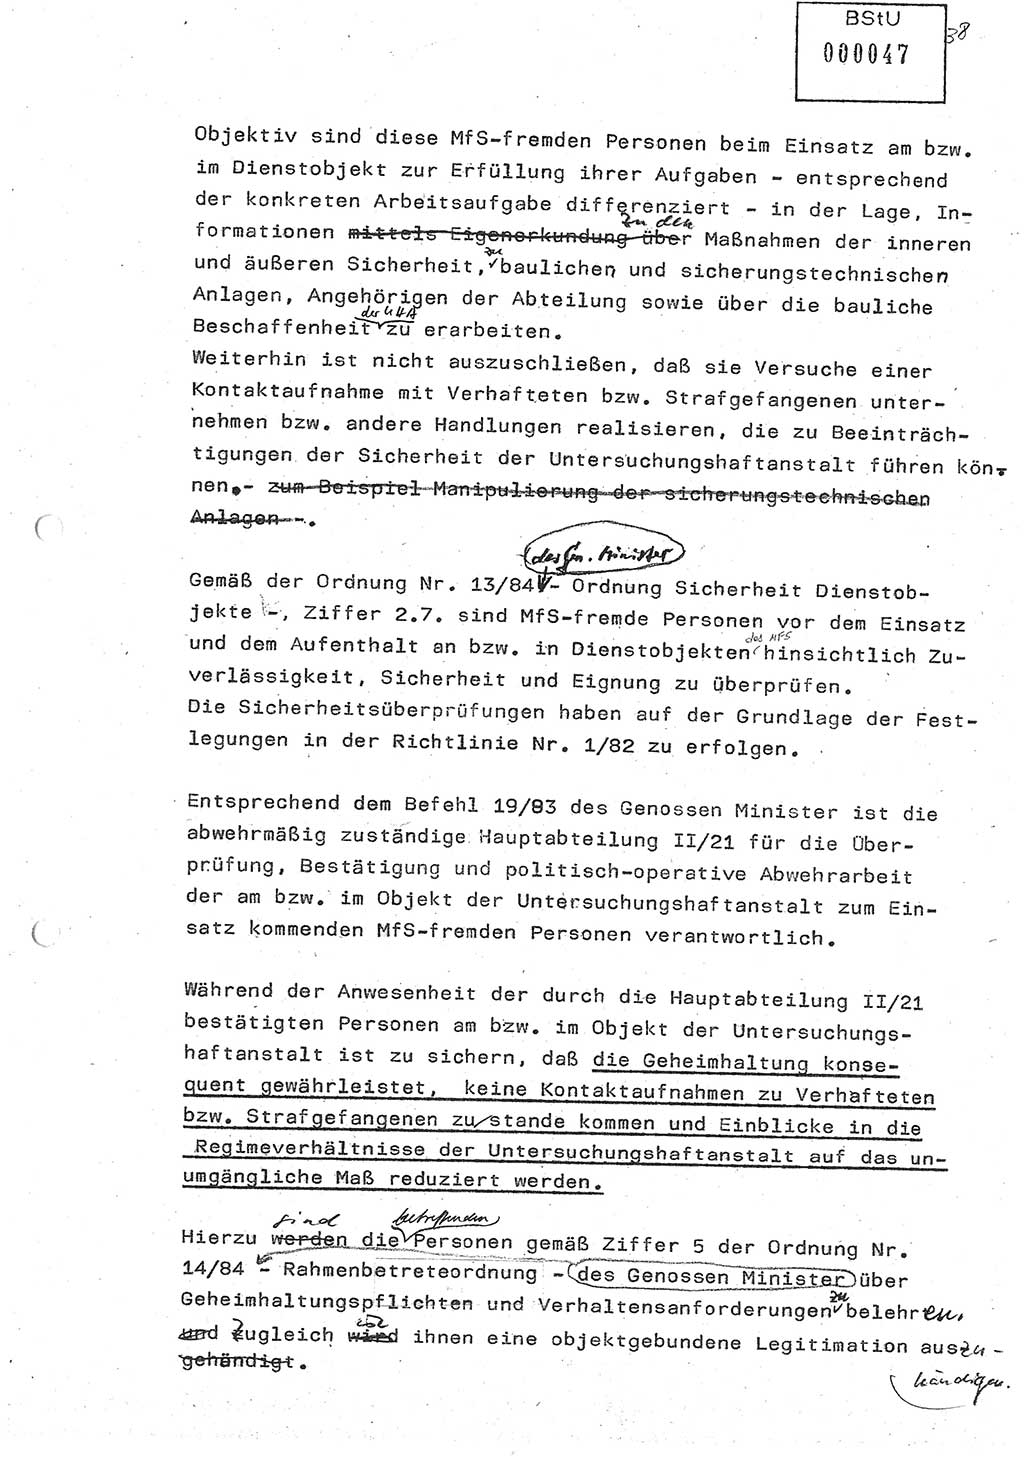 Diplomarbeit (Entwurf) Oberleutnant Peter Parke (Abt. ⅩⅣ), Ministerium für Staatssicherheit (MfS) [Deutsche Demokratische Republik (DDR)], Juristische Hochschule (JHS), Geheime Verschlußsache (GVS) o001-98/86, Potsdam 1986, Seite 47 (Dipl.-Arb. MfS DDR JHS GVS o001-98/86 1986, S. 47)